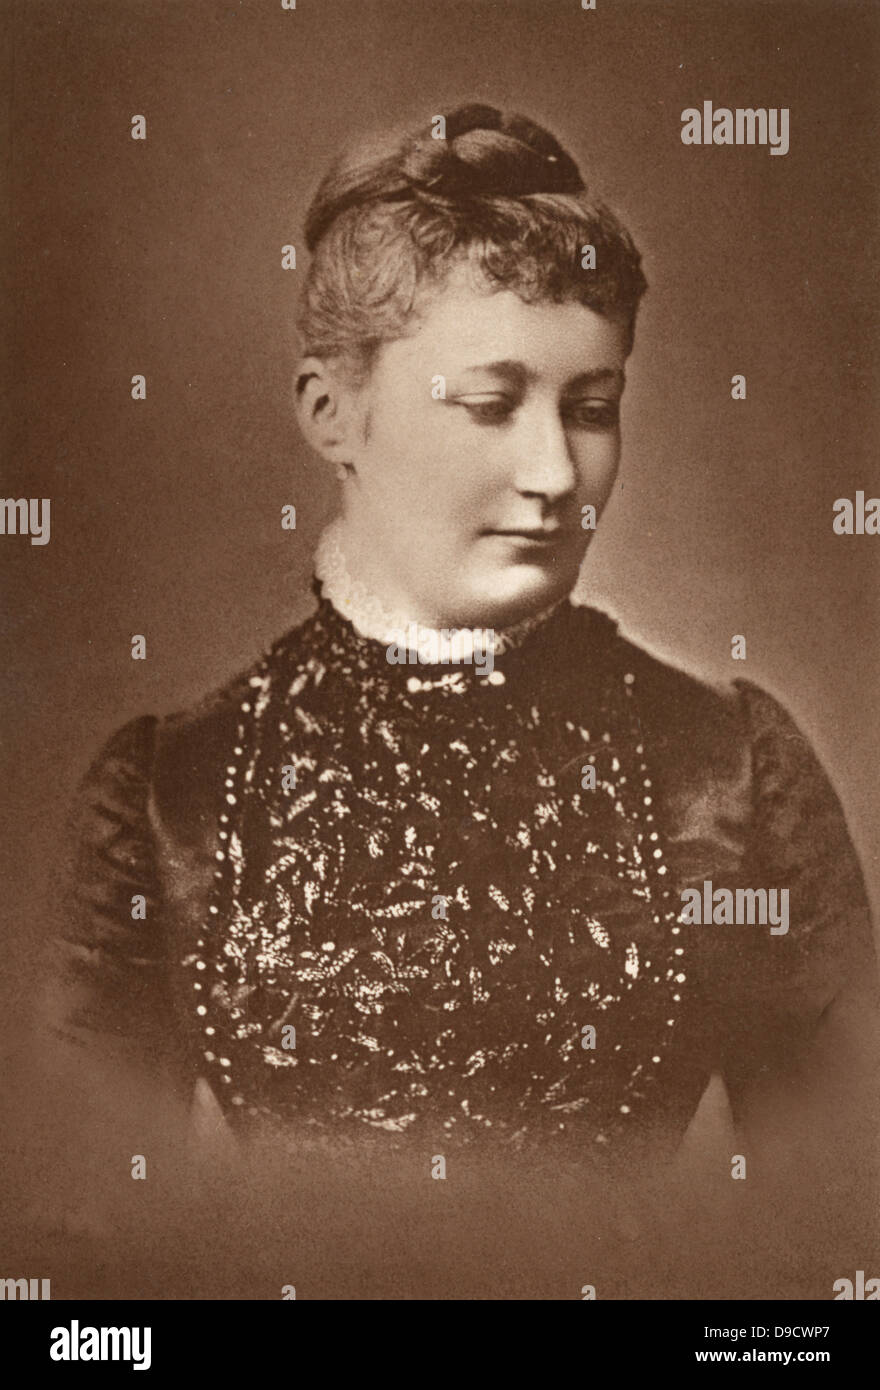 Augusta Victoria de Schleswig-Holstein (1858-1921), épouse de Guillaume II Roi de Prusse et empereur d'Allemagne, sur la photo c1887 avant que son mari accéda au trône en 1888. Banque D'Images